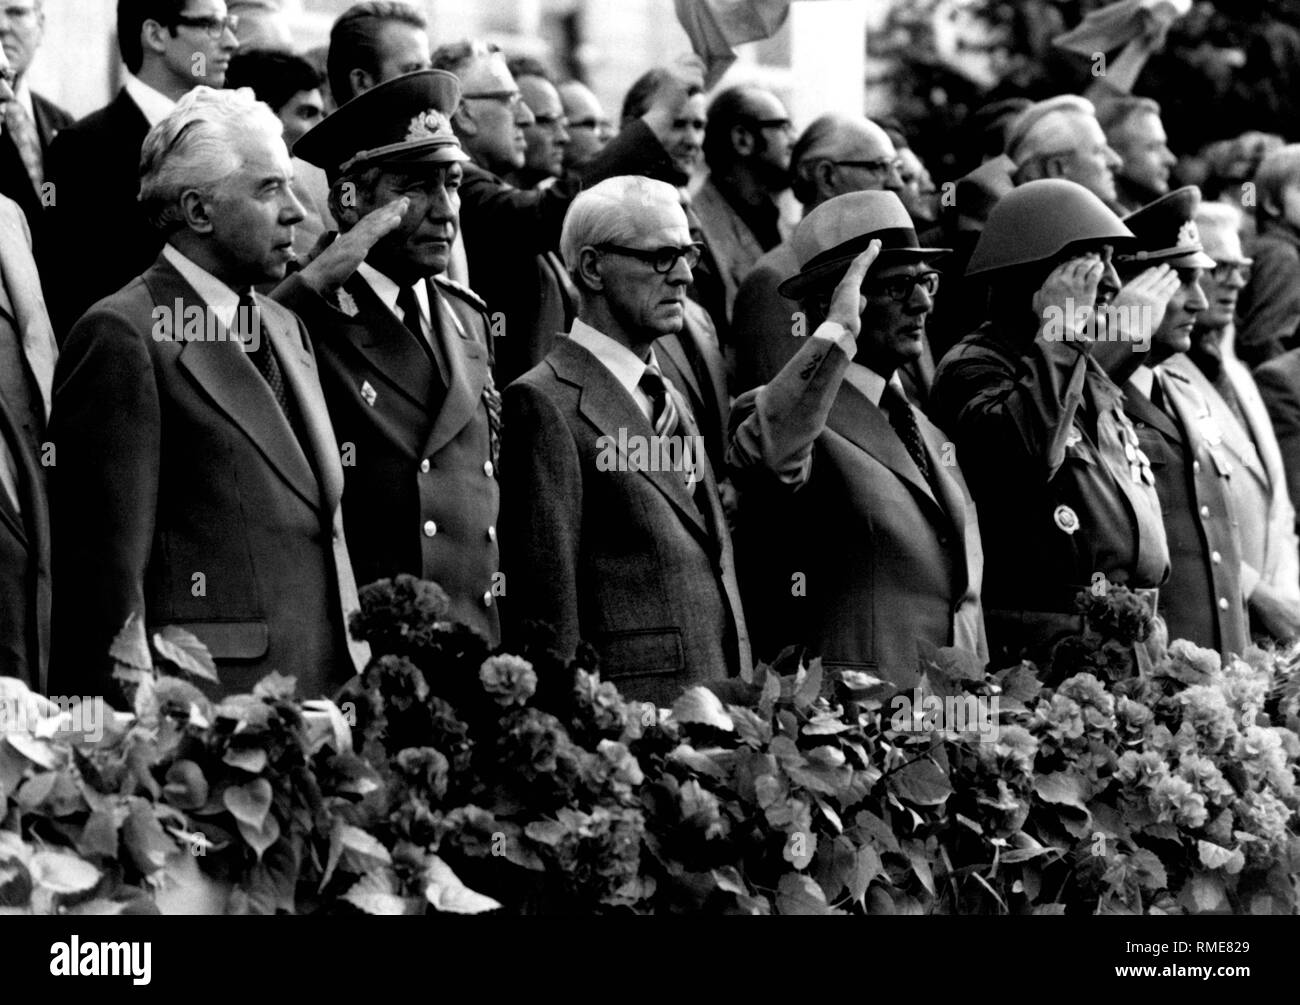 Der sowjetische Botschafter in der DDR, Abrassimov, DDR-Verteidigungsminister Heinz Hoffmann und der DDR-oberen Beamten Willy Stoph und Erich Honecker (von links nach rechts) bei einer Parade der Kampfgruppen der Arbeiterklasse. (Undatiertes Foto) Stockfoto